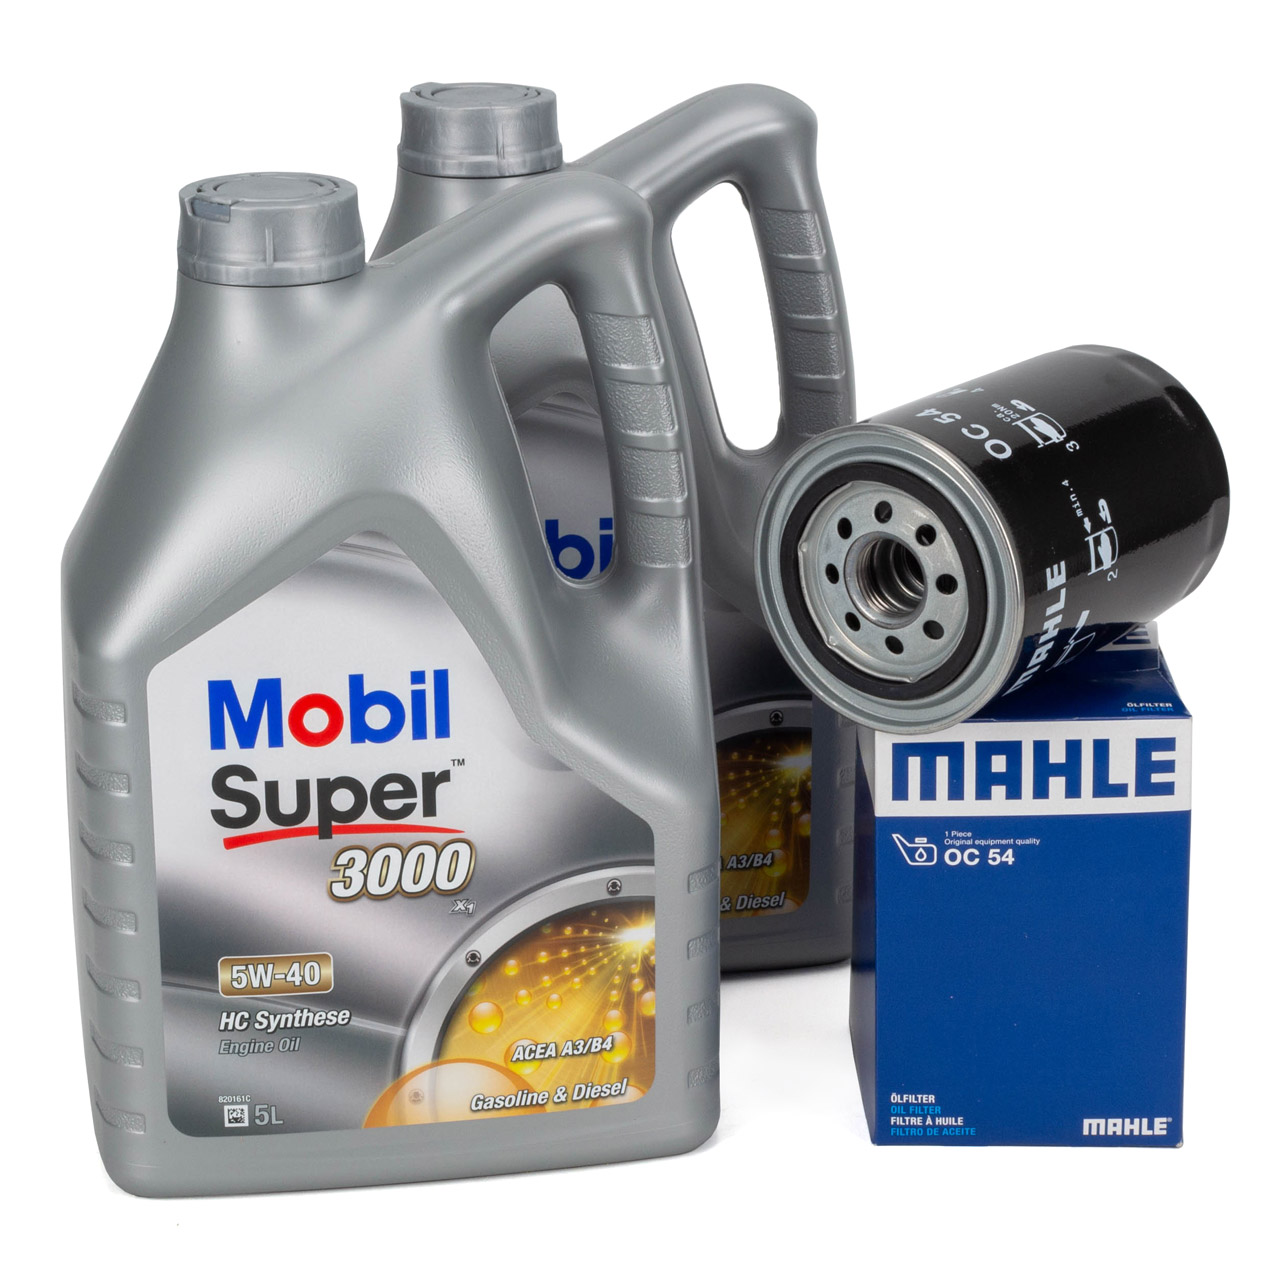 10L Mobil SUPER 3000 X1 5W-40 Motoröl Öl + MAHLE OC54 Ölfilter PORSCHE 93010776403